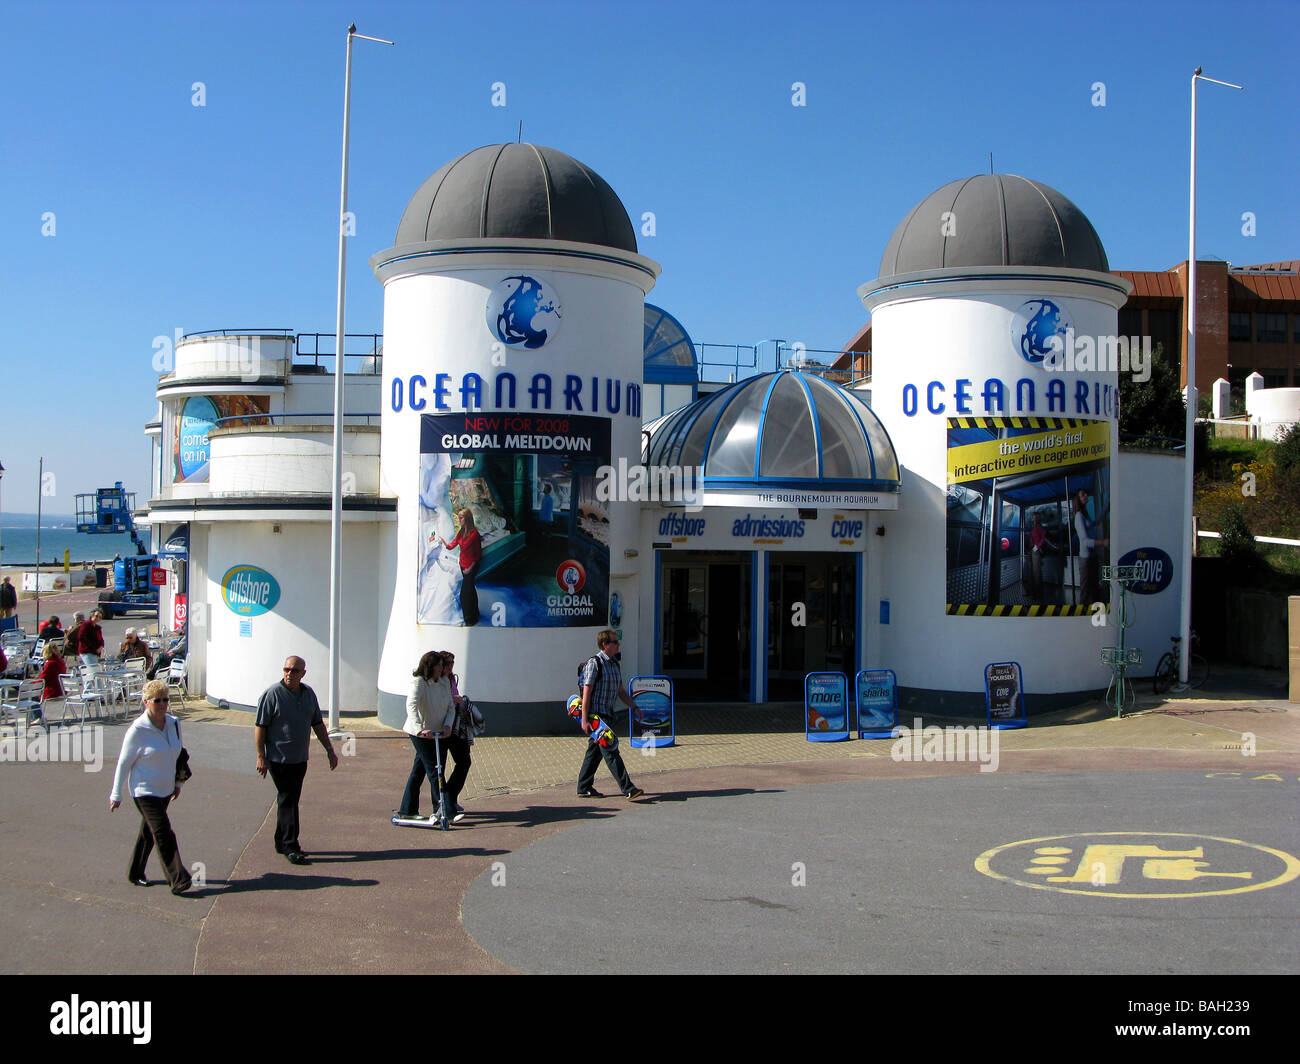 Bournemouth Ozeanarium, Dorset, England, UK Stockfoto